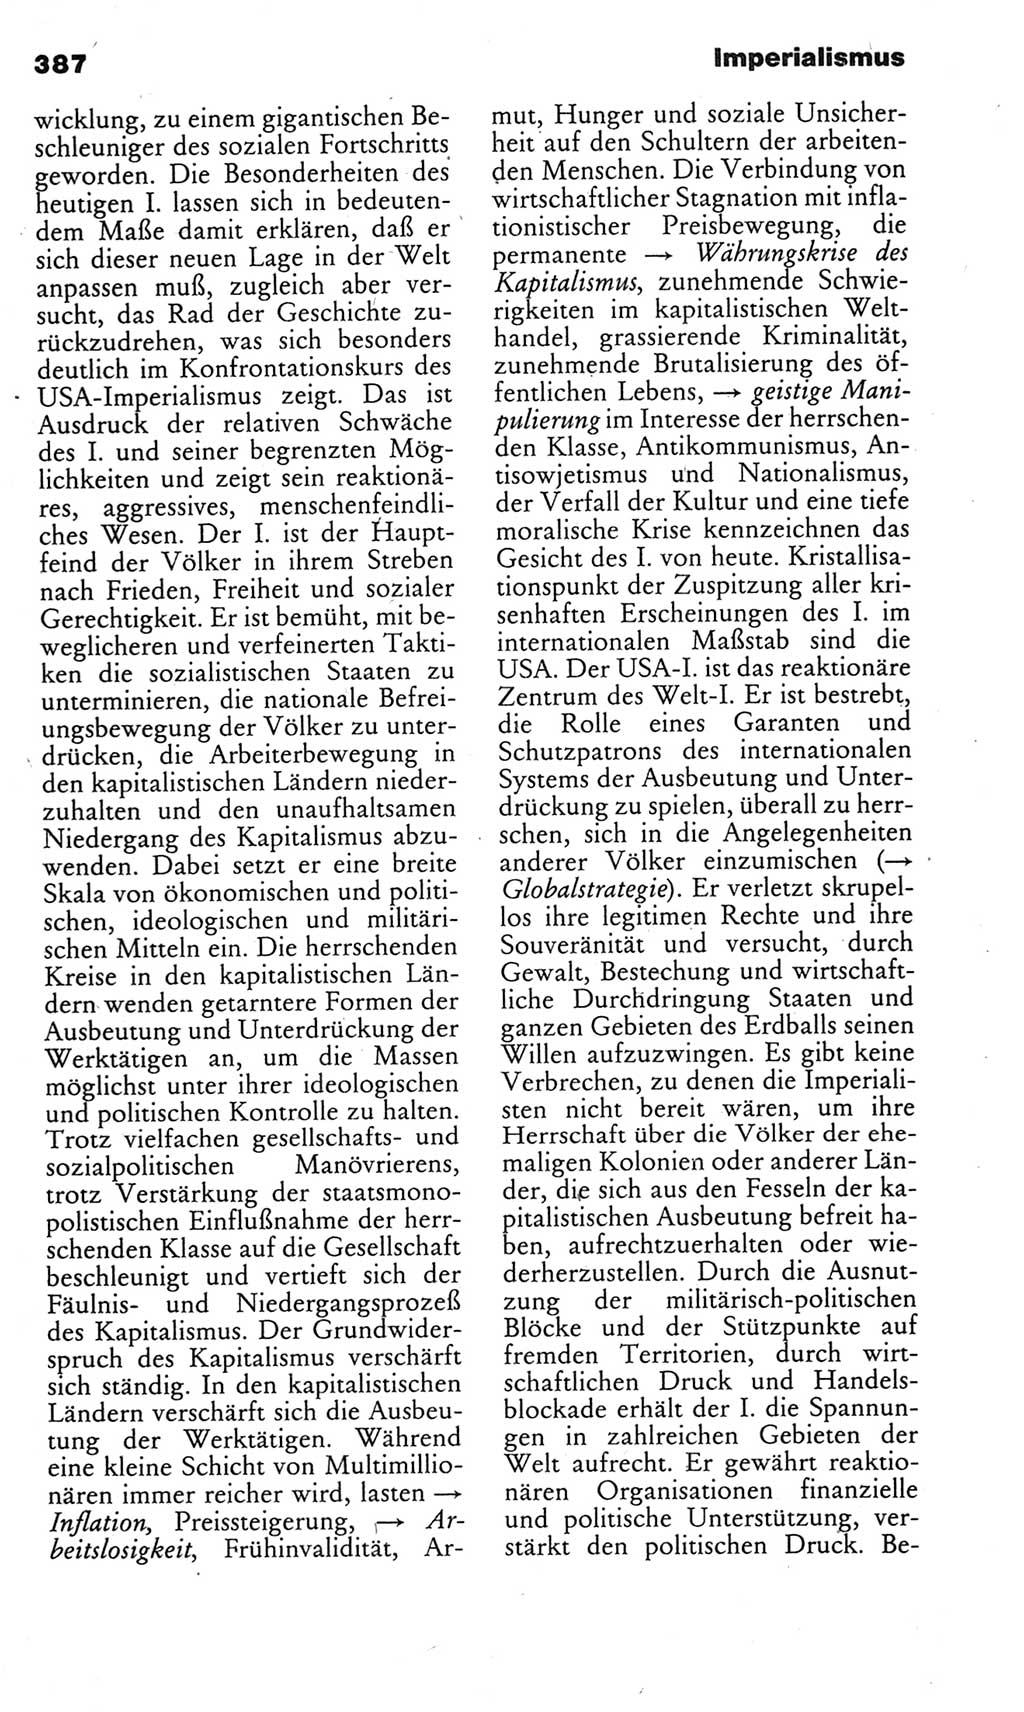 Kleines politisches Wörterbuch [Deutsche Demokratische Republik (DDR)] 1985, Seite 387 (Kl. pol. Wb. DDR 1985, S. 387)